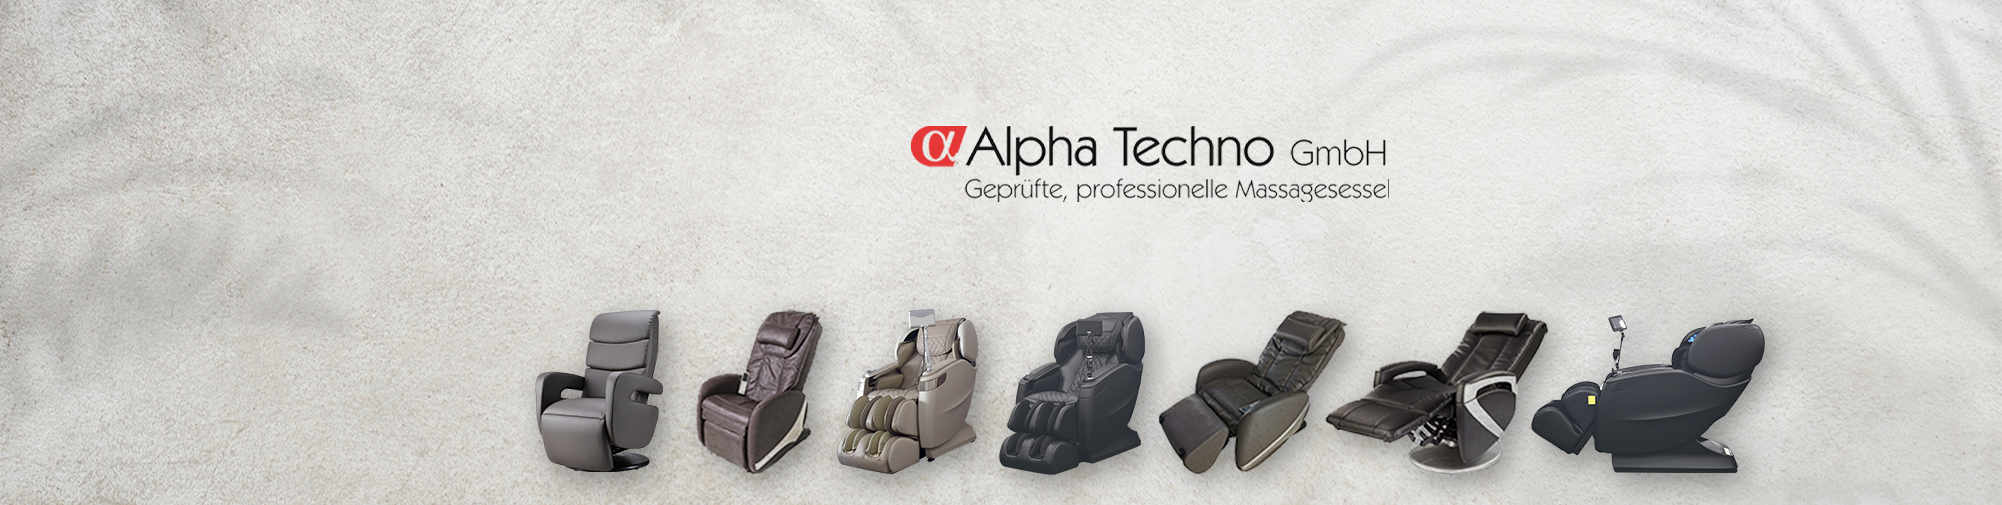 阿尔法技术公司 - 欧洲第一的按摩椅世界。